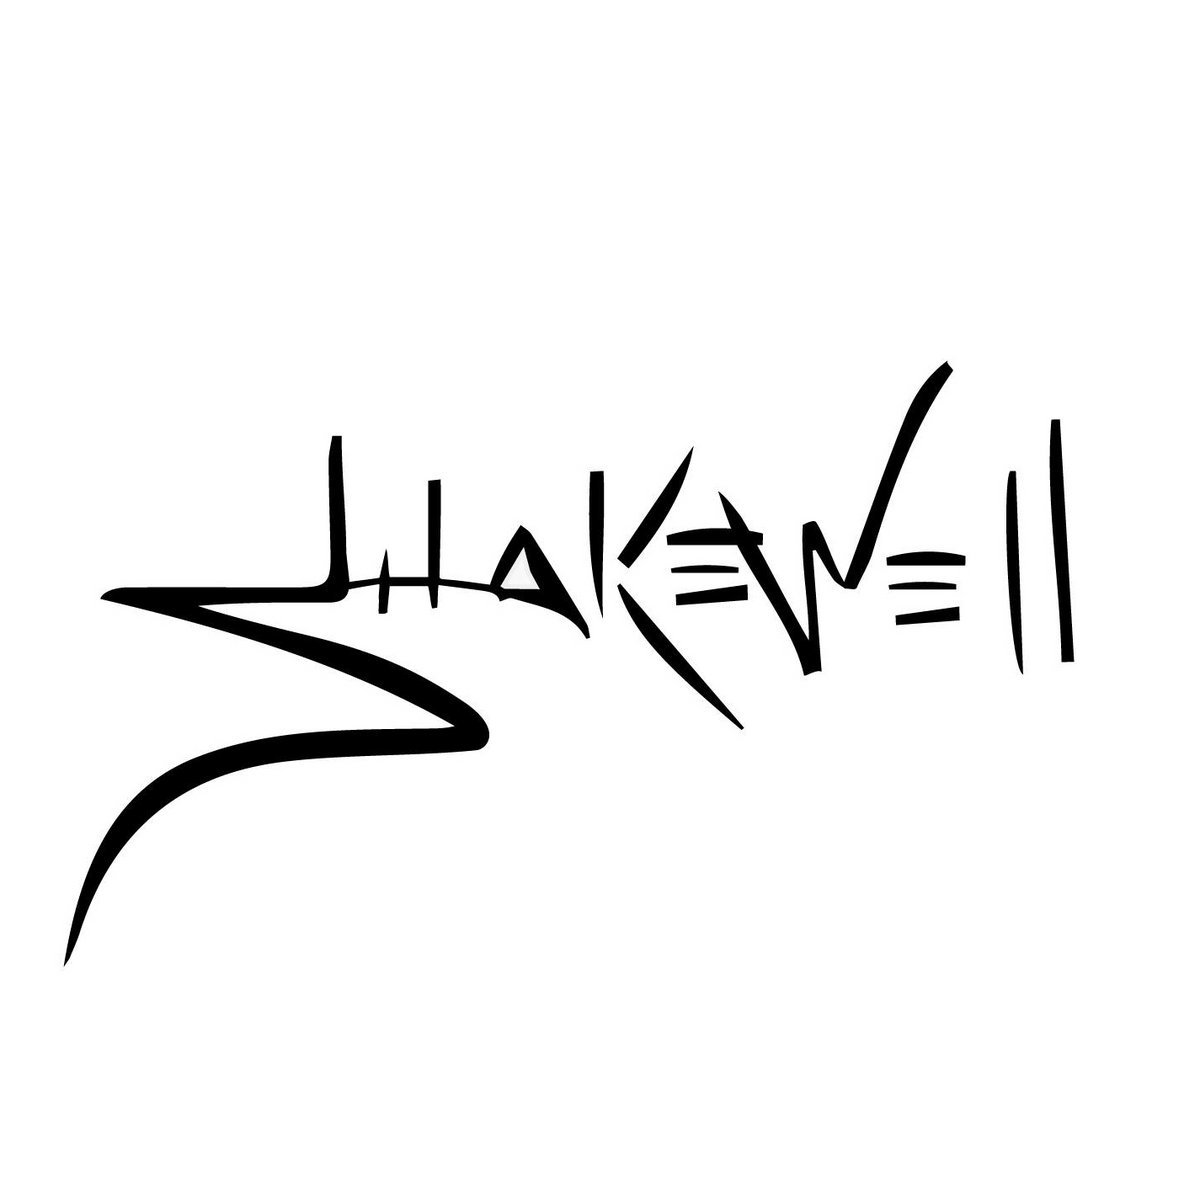 Skakewell Shakewell EP.jpeg